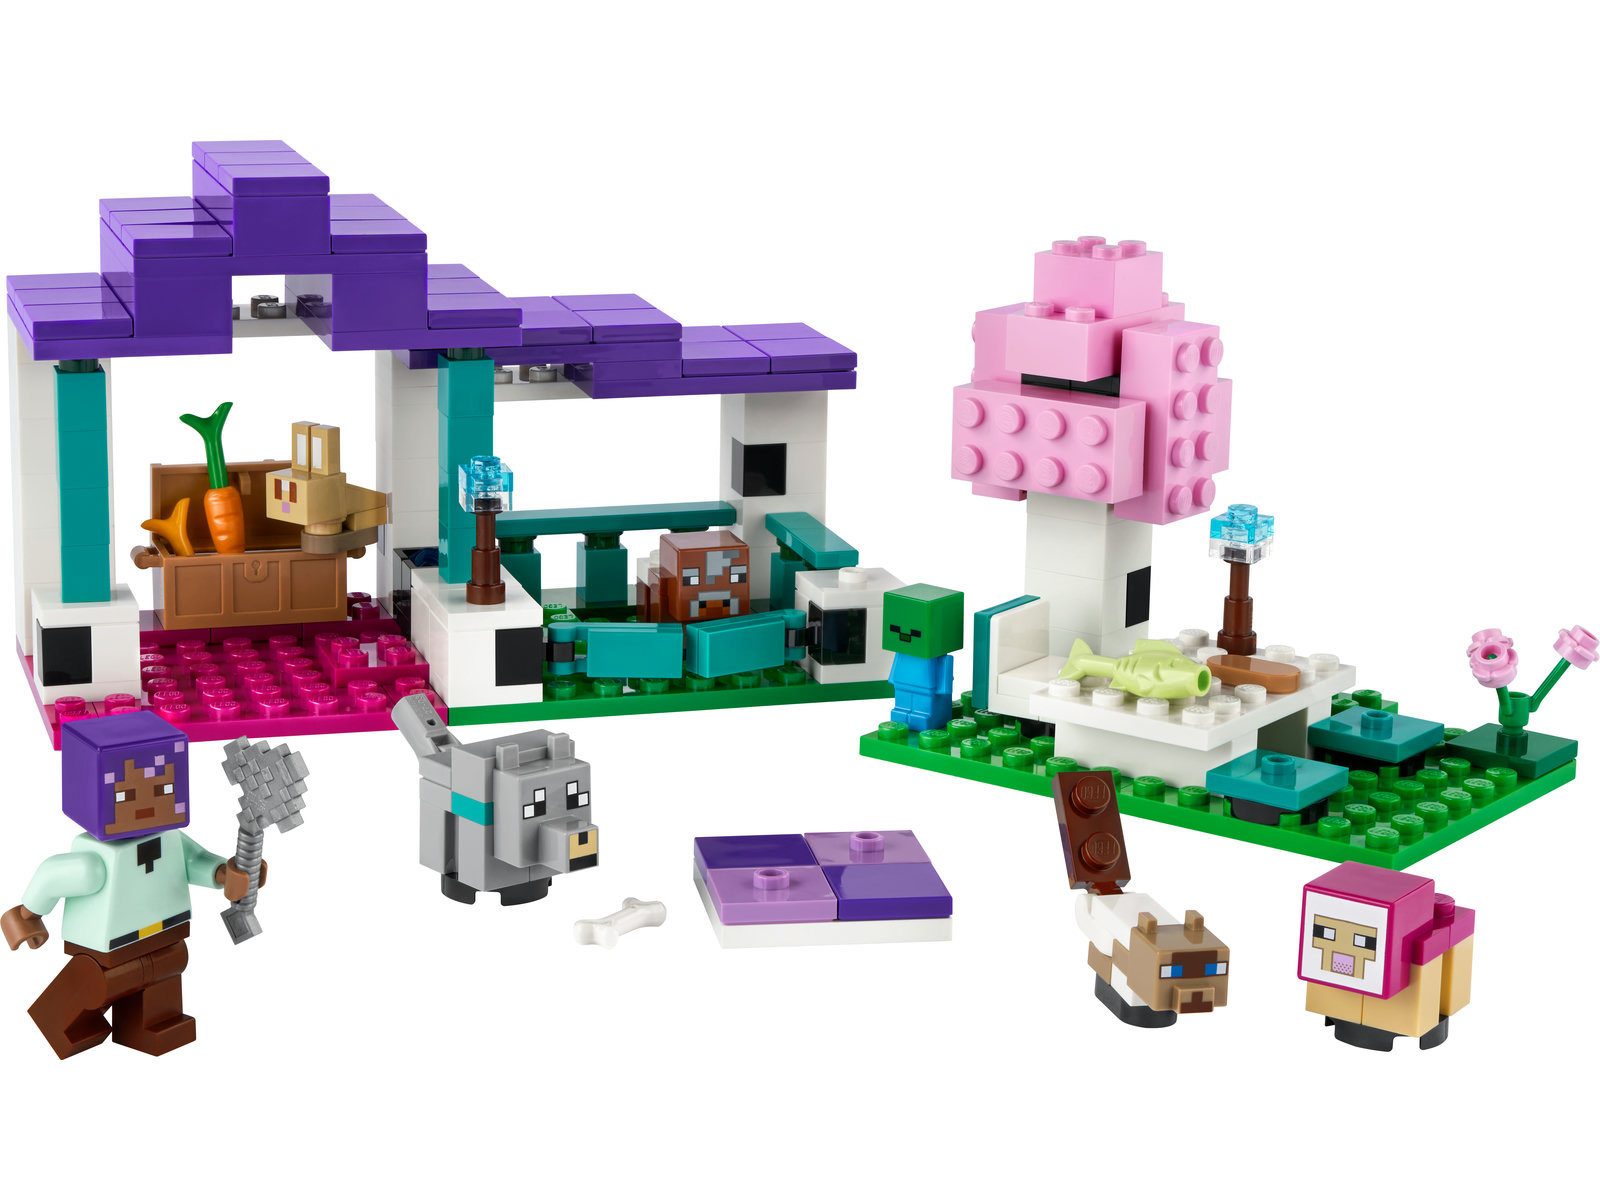 LEGO® Minecraft 21253 - Das Tierheim